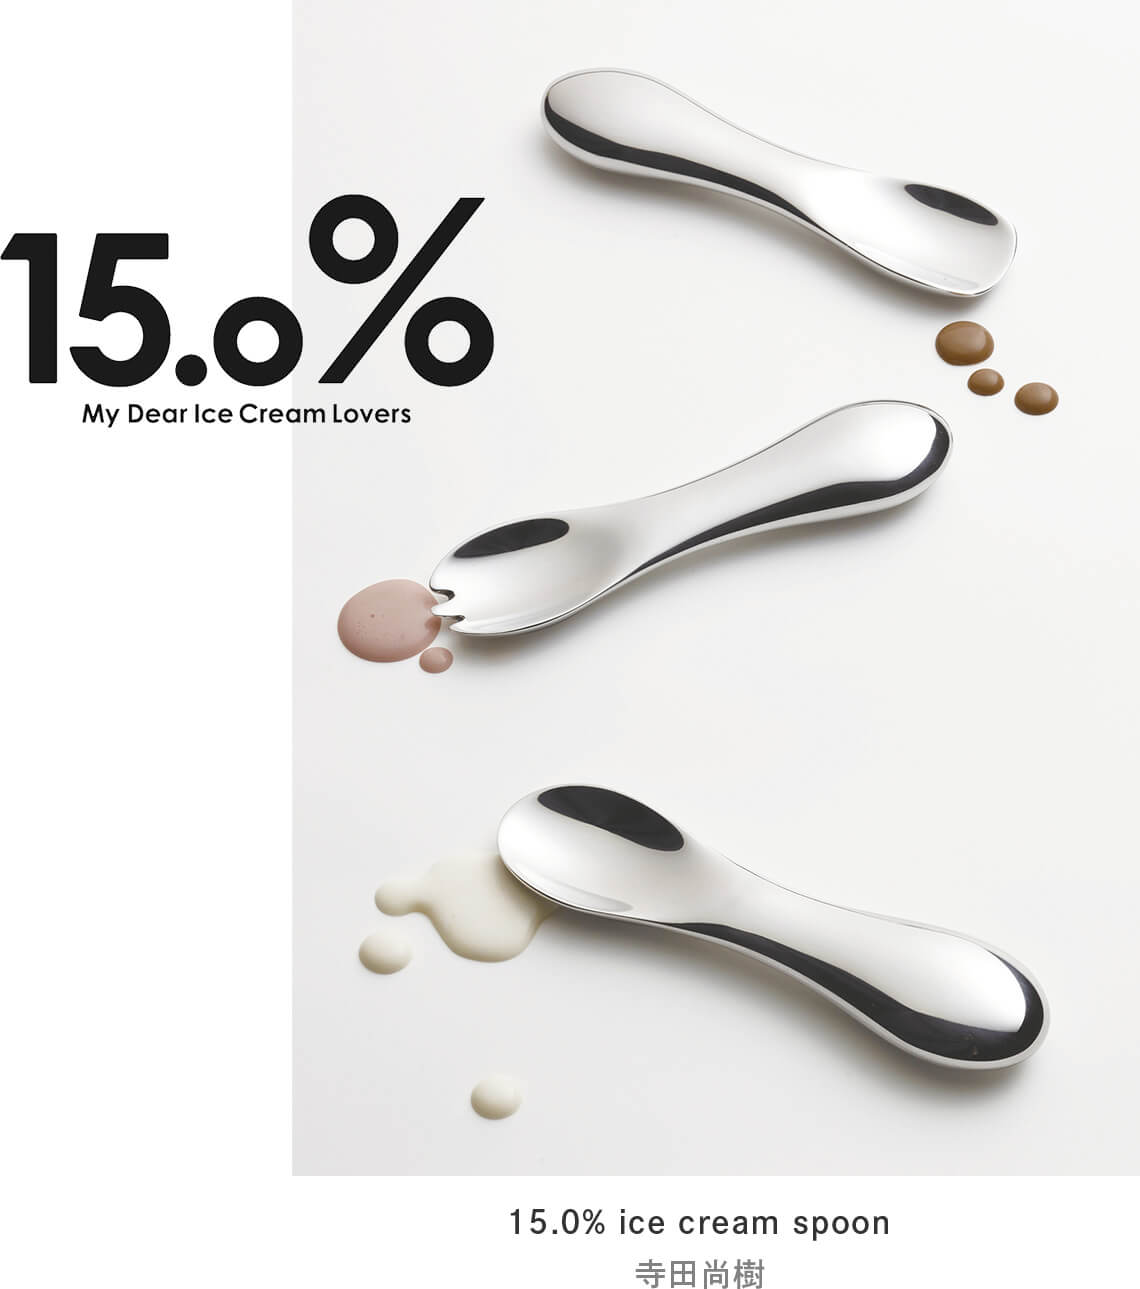 15.0% ice cream spoon Designed by Naoki Terada